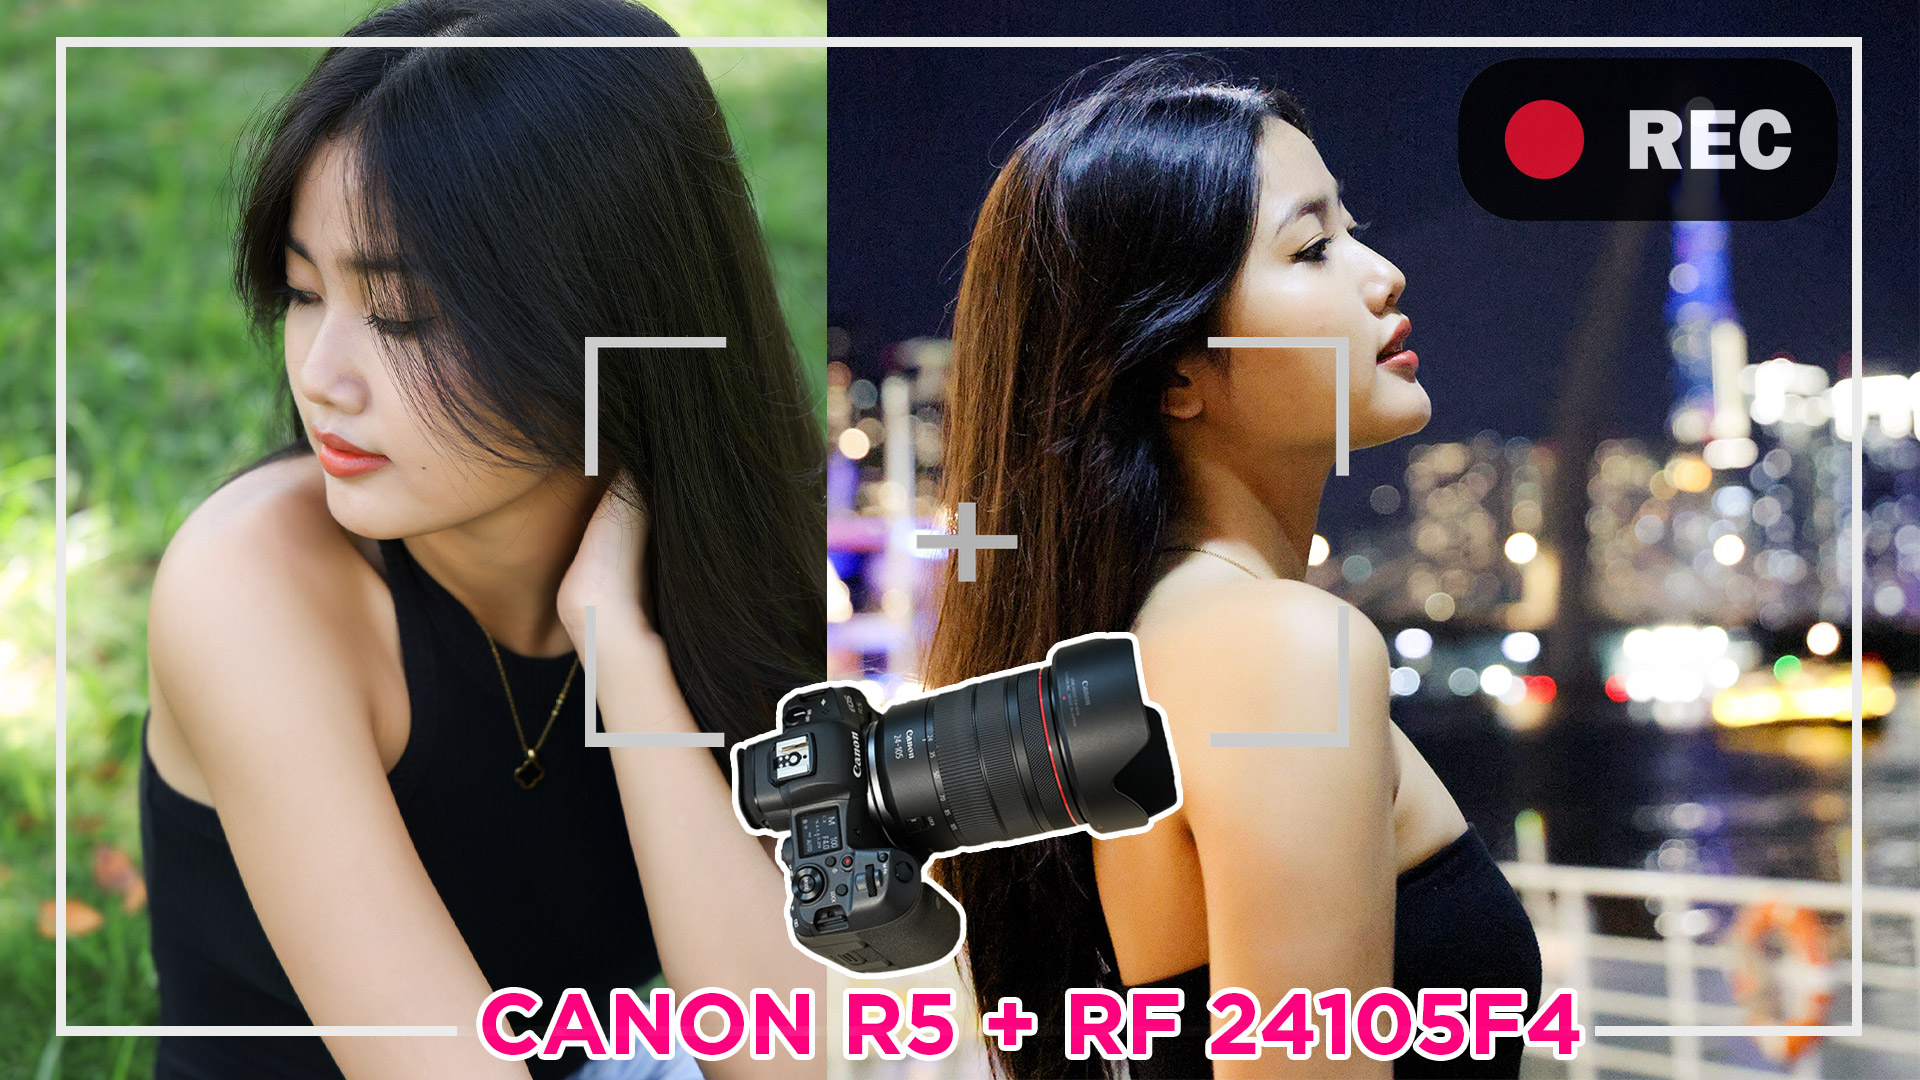 Canon R5 và Lens RF24105mmF4 – Combo quá hoàn hảo cho anh em quay và chụp chuyên nghiệp